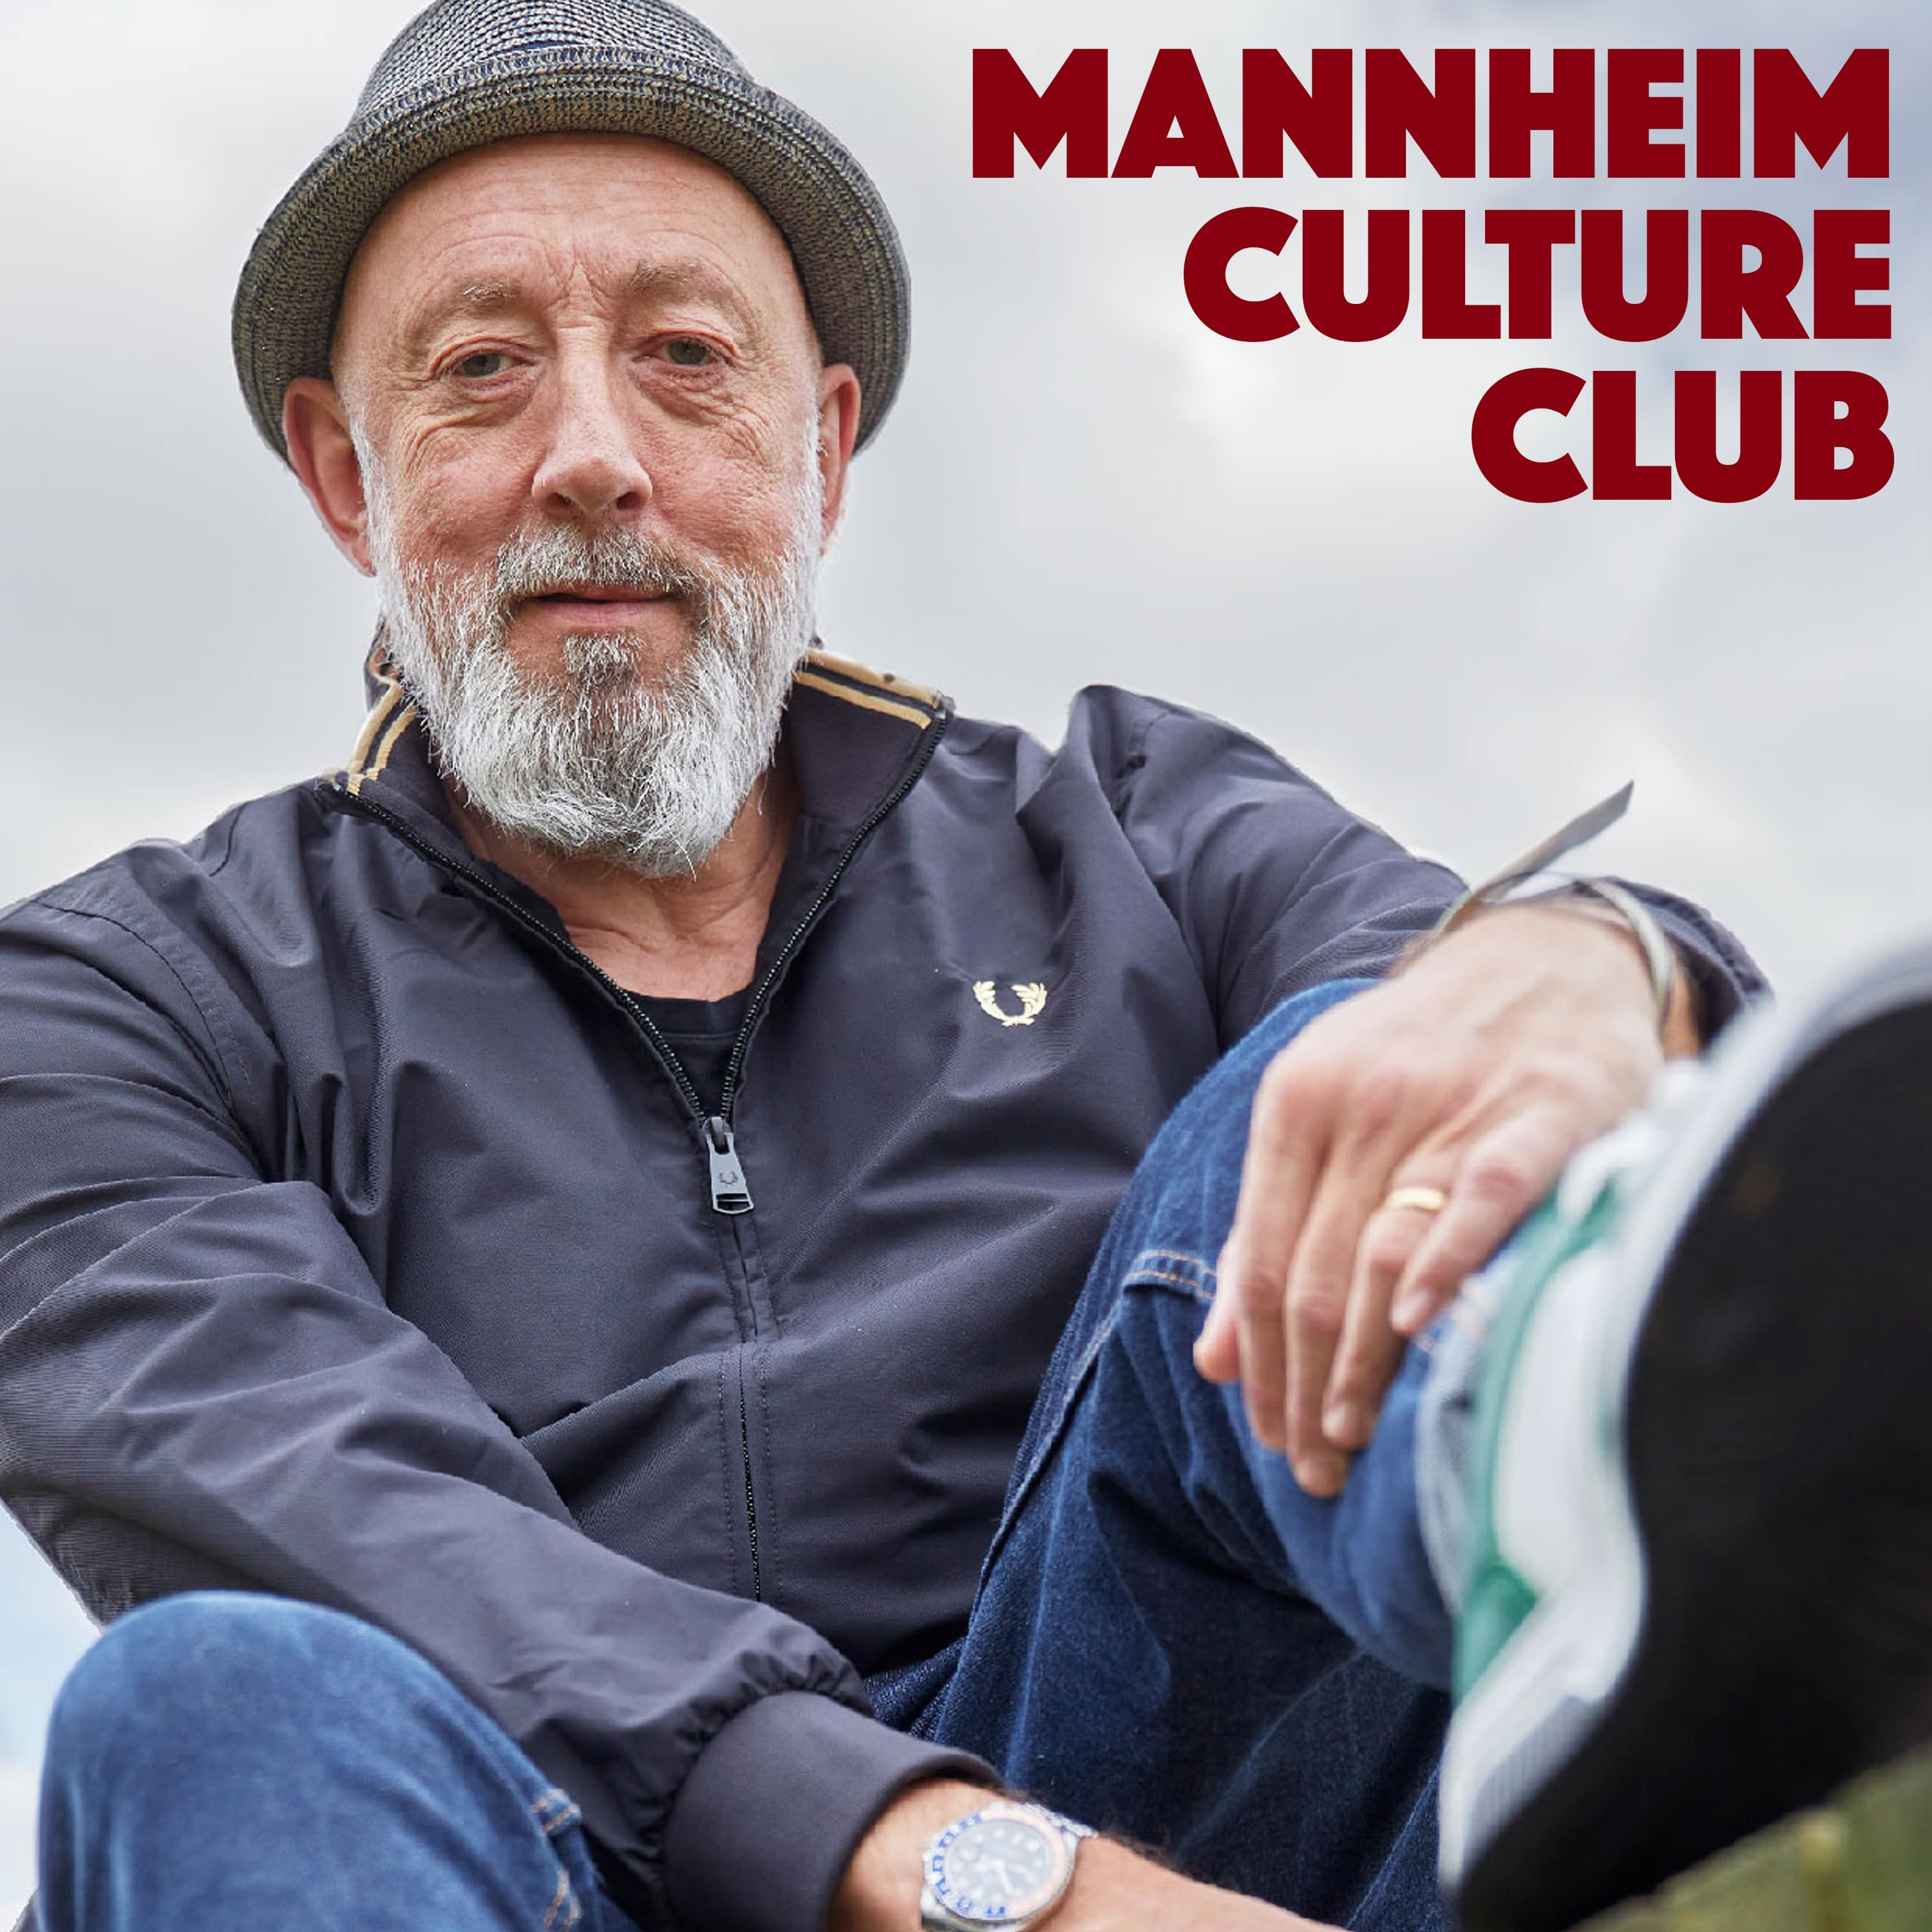 MANNHEIM CULTURE CLUB |  Der Podcast mit Markus Sprengler